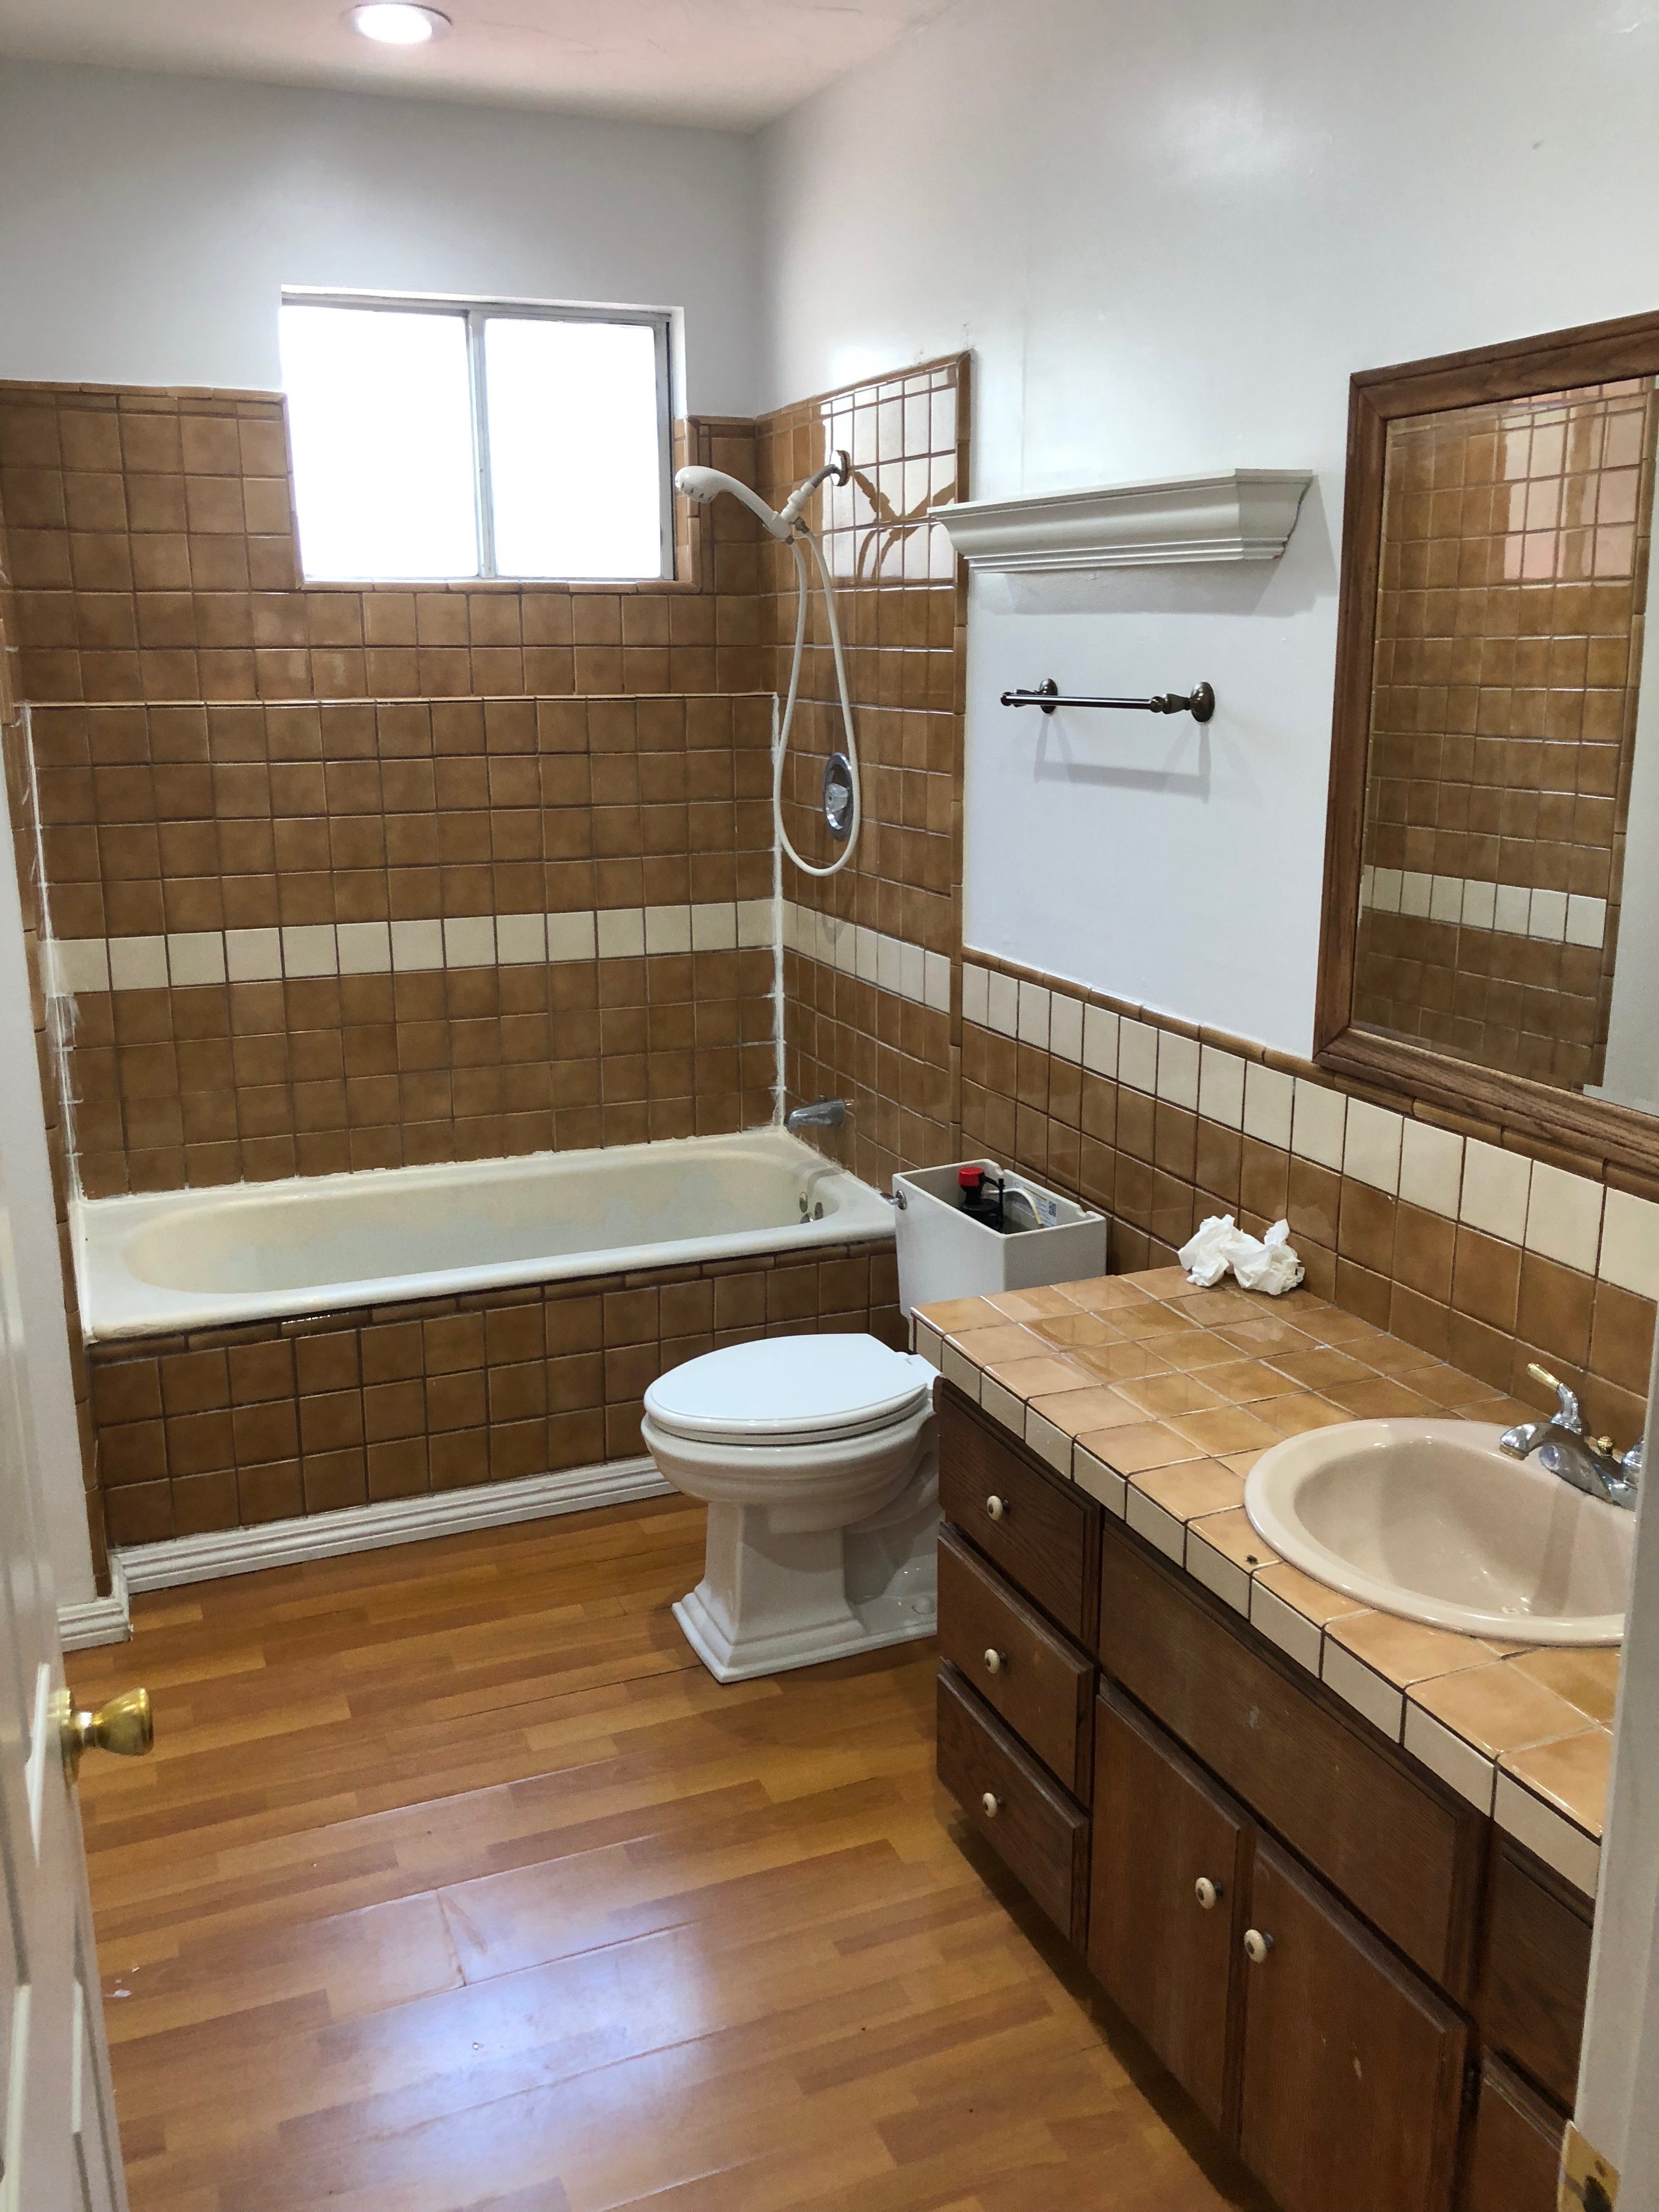 Bathtub refinishing, sink re-glaze and tile resurfacing before - NuFinishPro